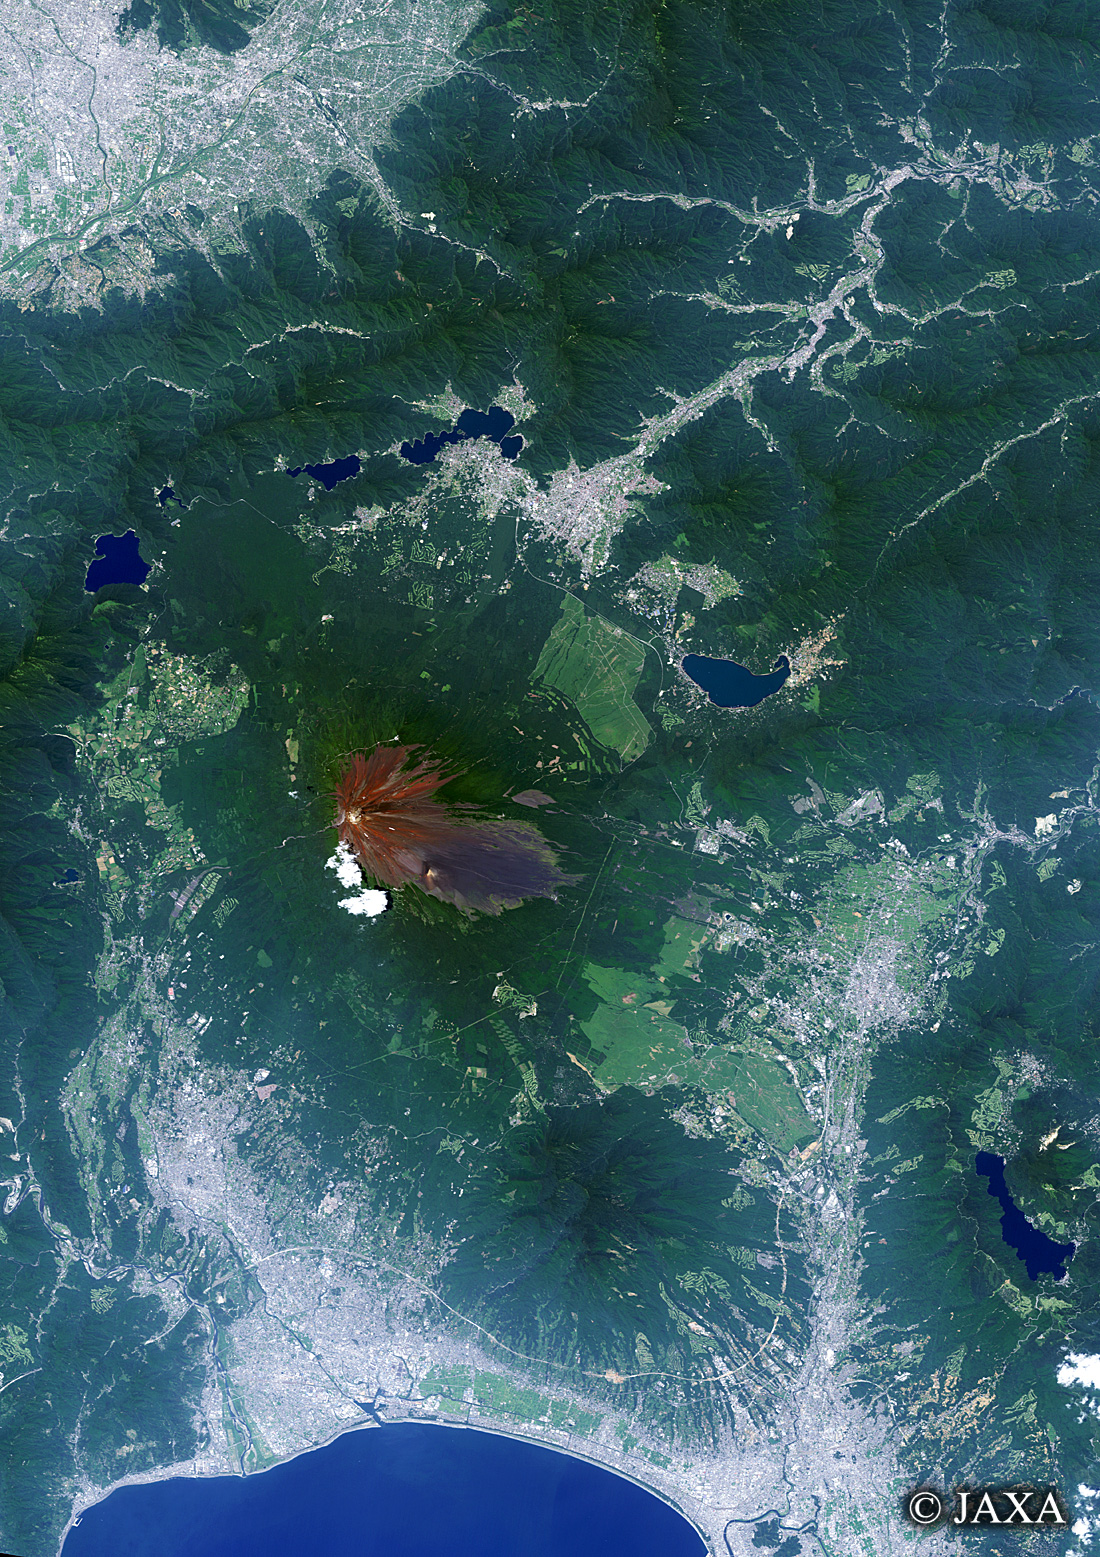 だいちから見た日本の都市 富士山周辺:衛星画像